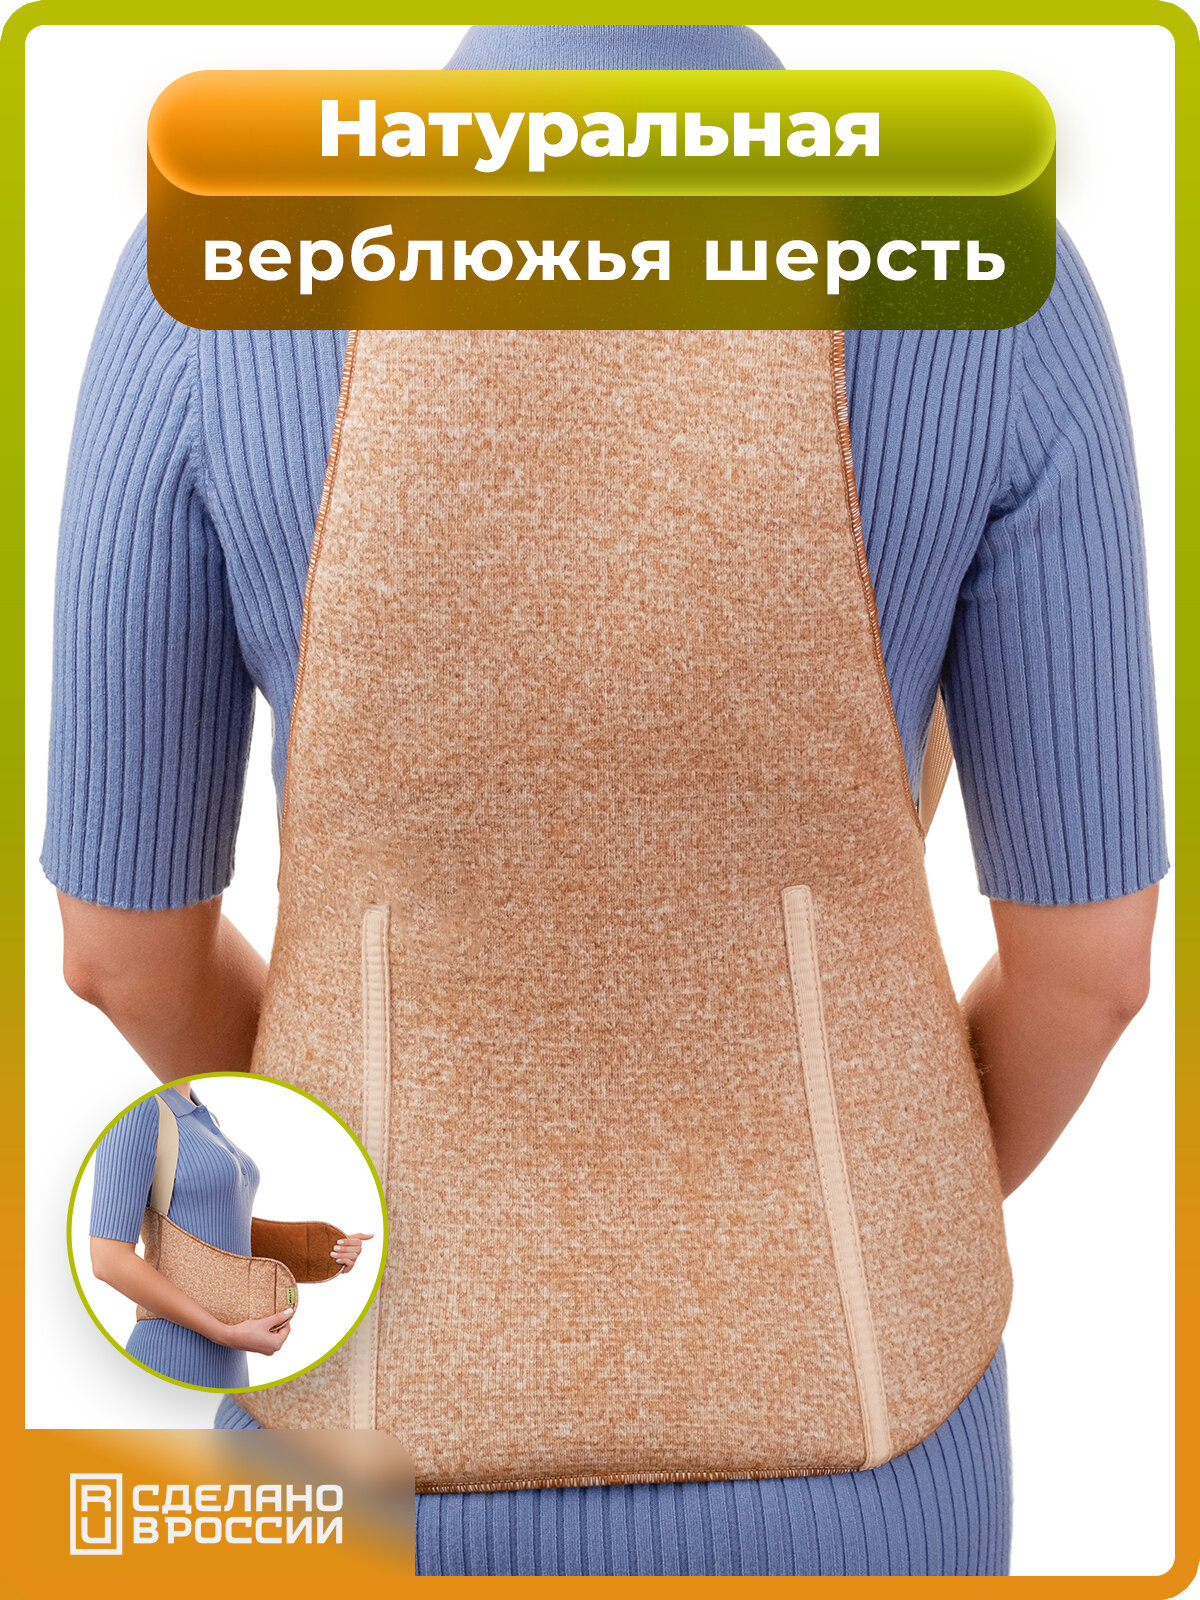 Пояс для спины из верблюжьей шерсти согревающий теплый корсетный (XL)